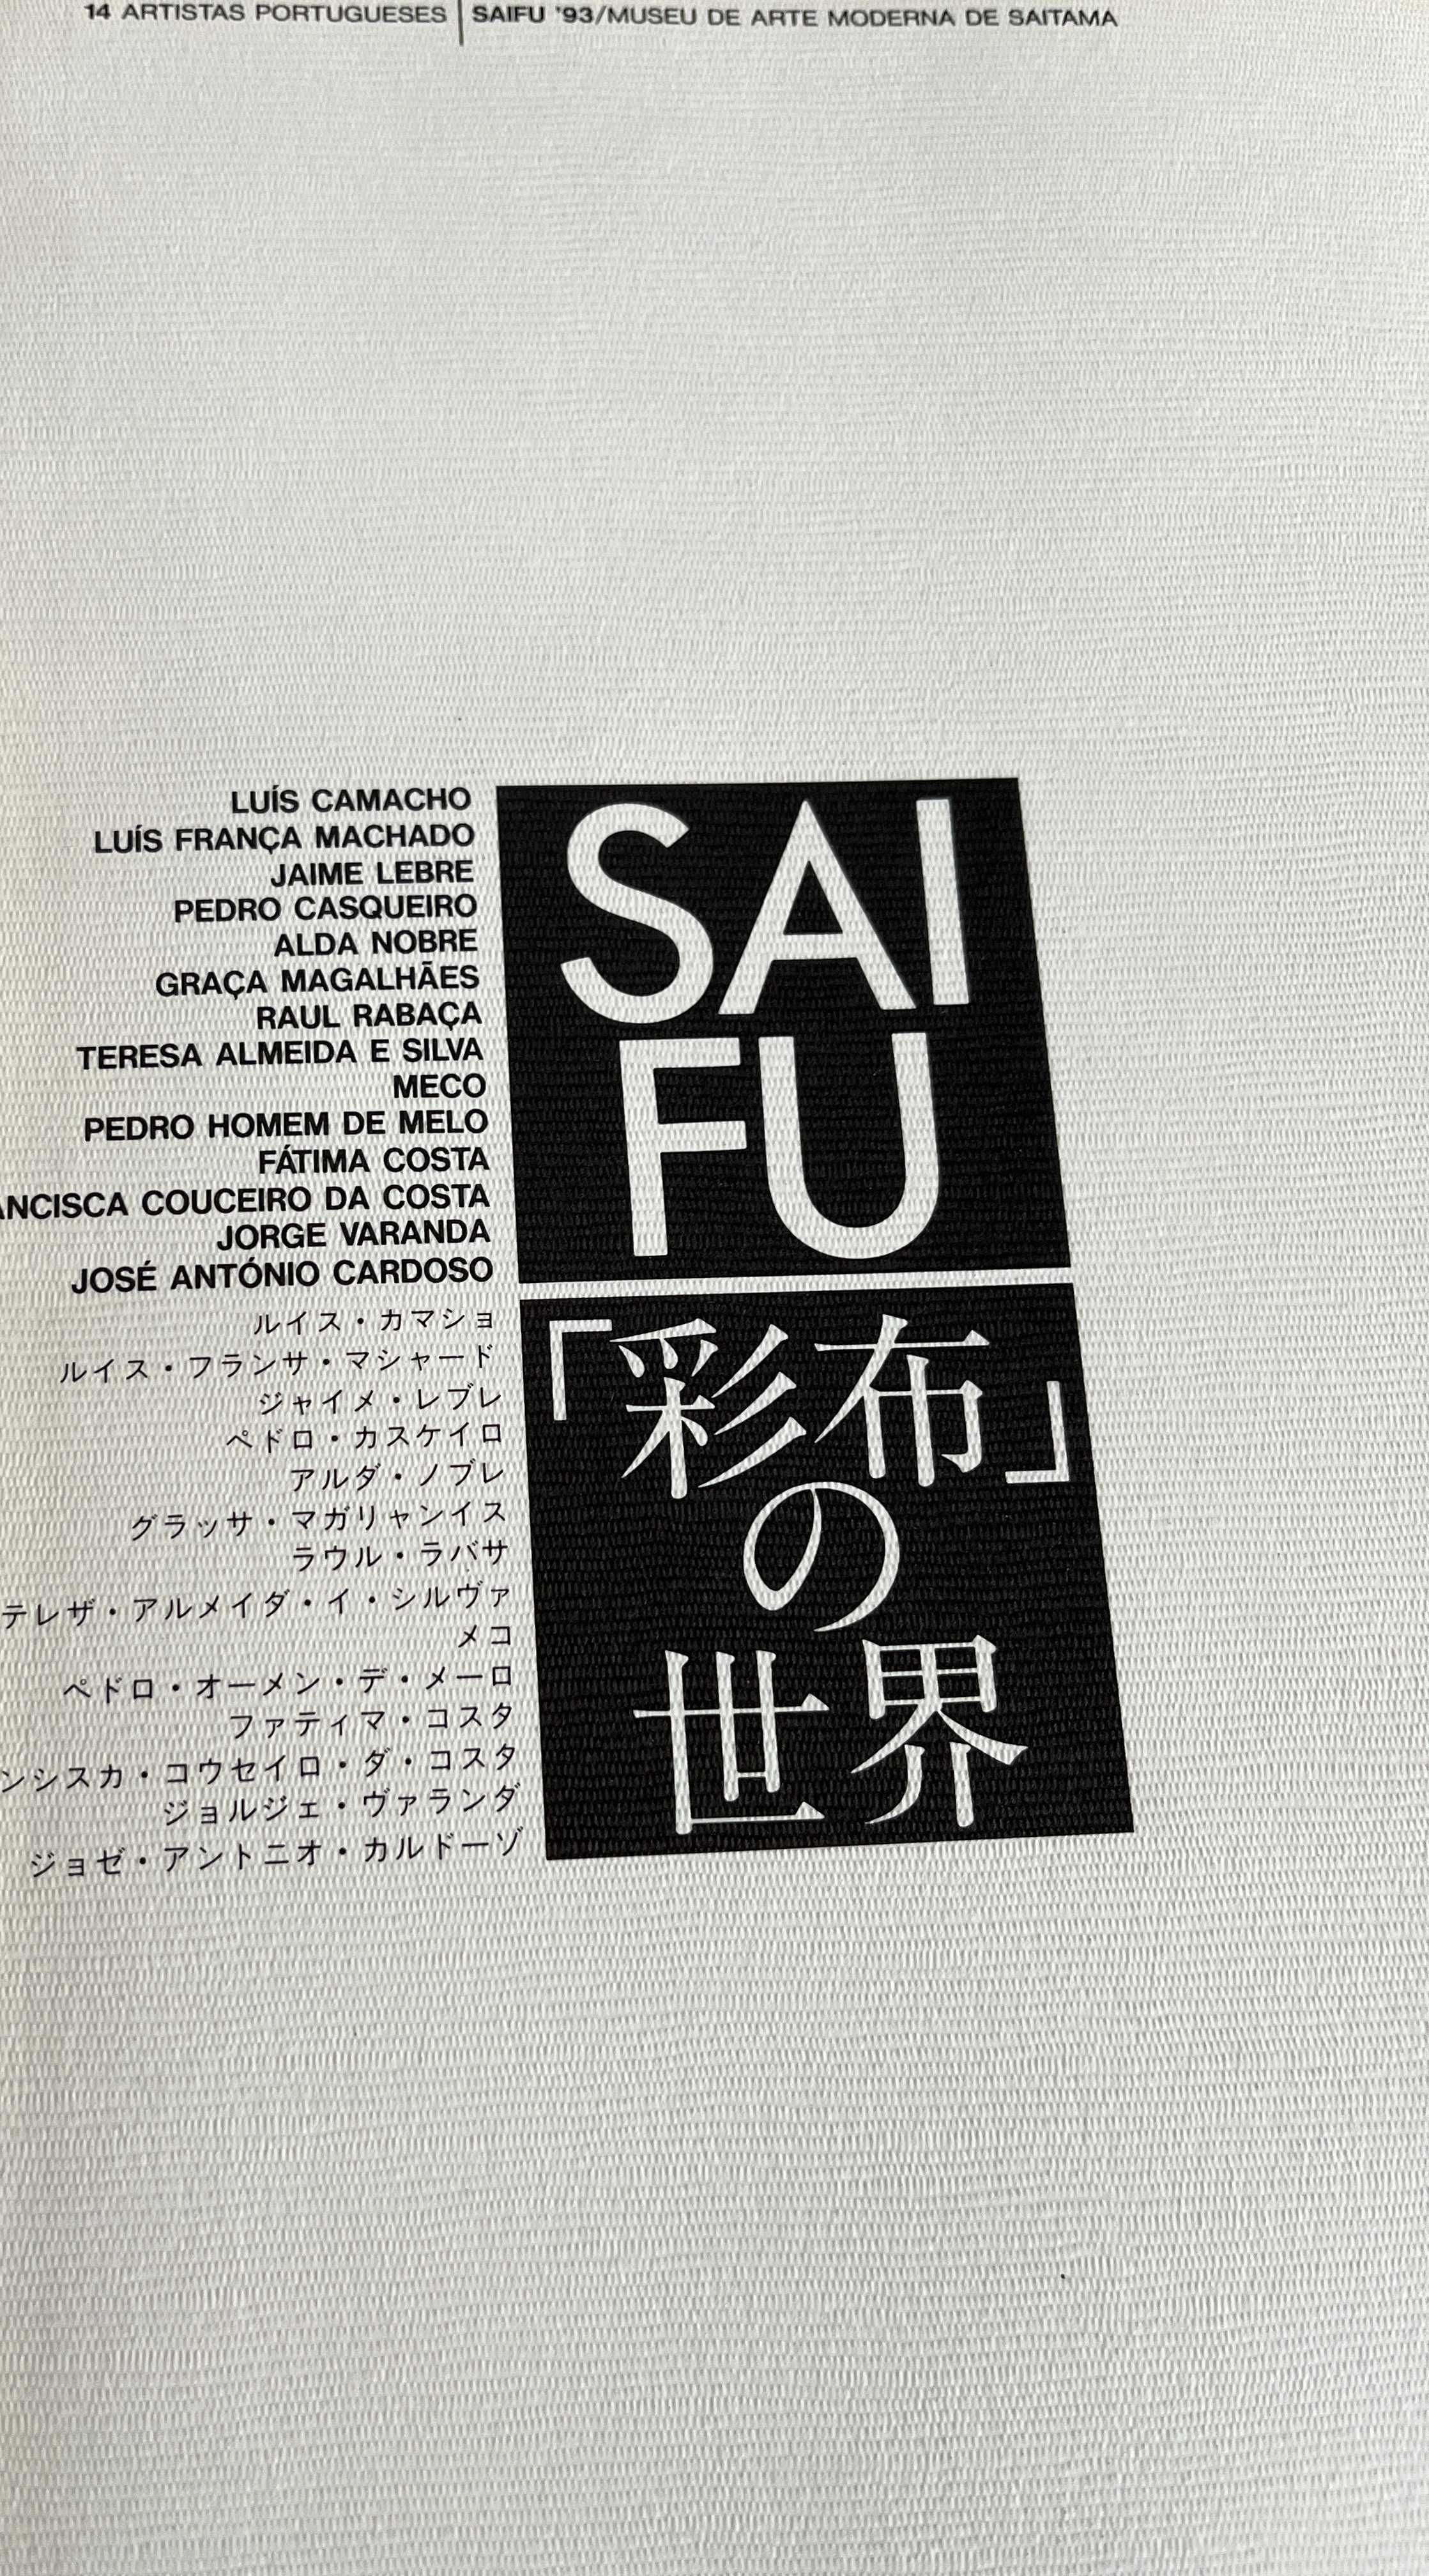 Artistas Portugueses Saifu Museu de Arte Moderna Saitama Japão 1993